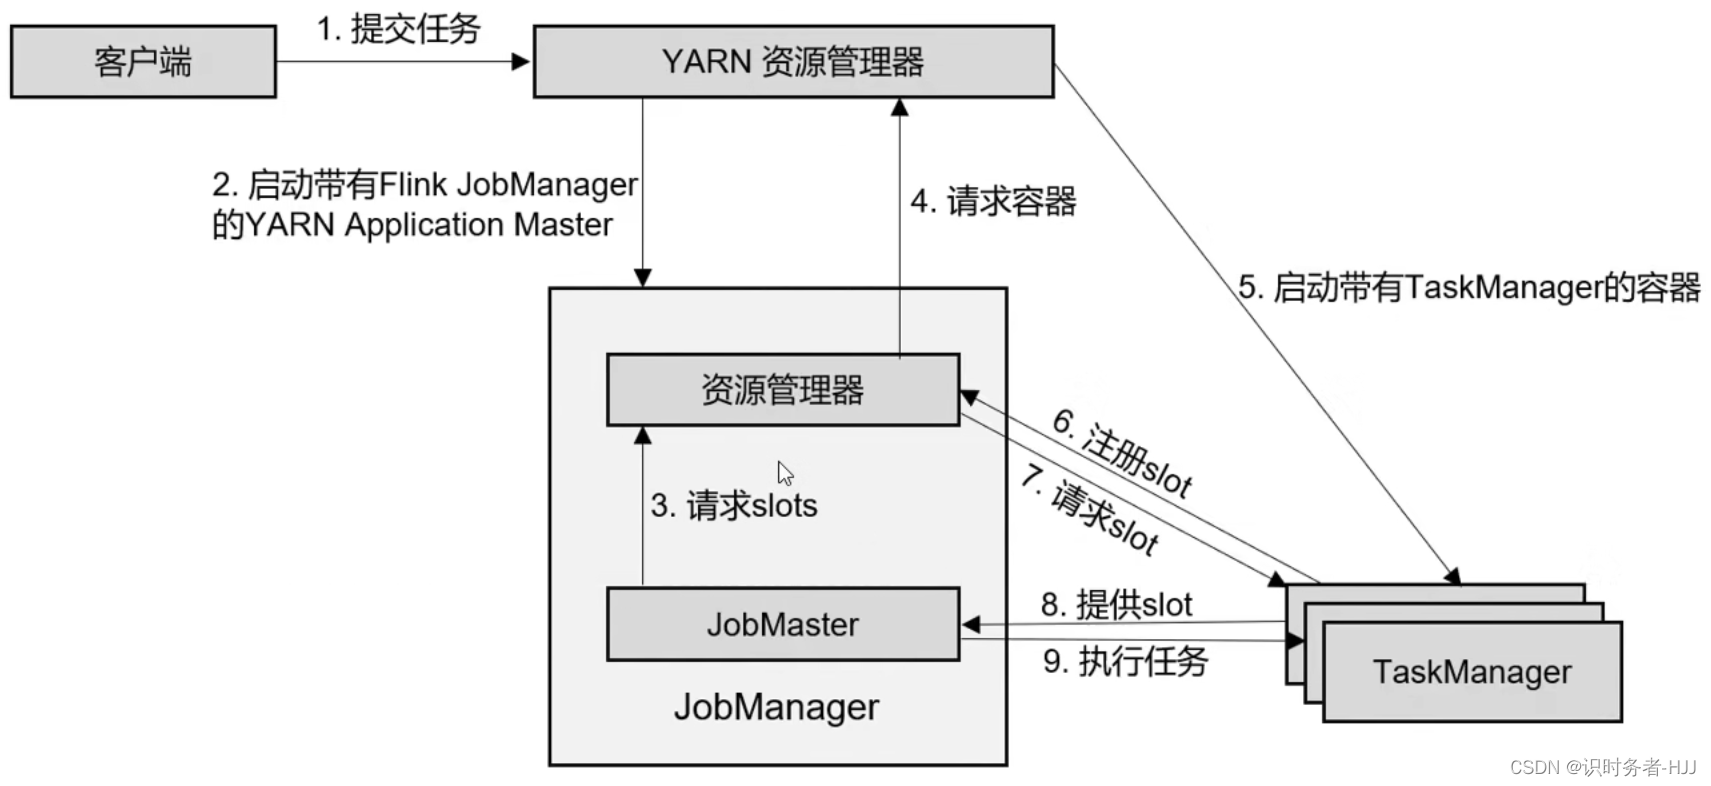 YARN单作业模式任务提交流程